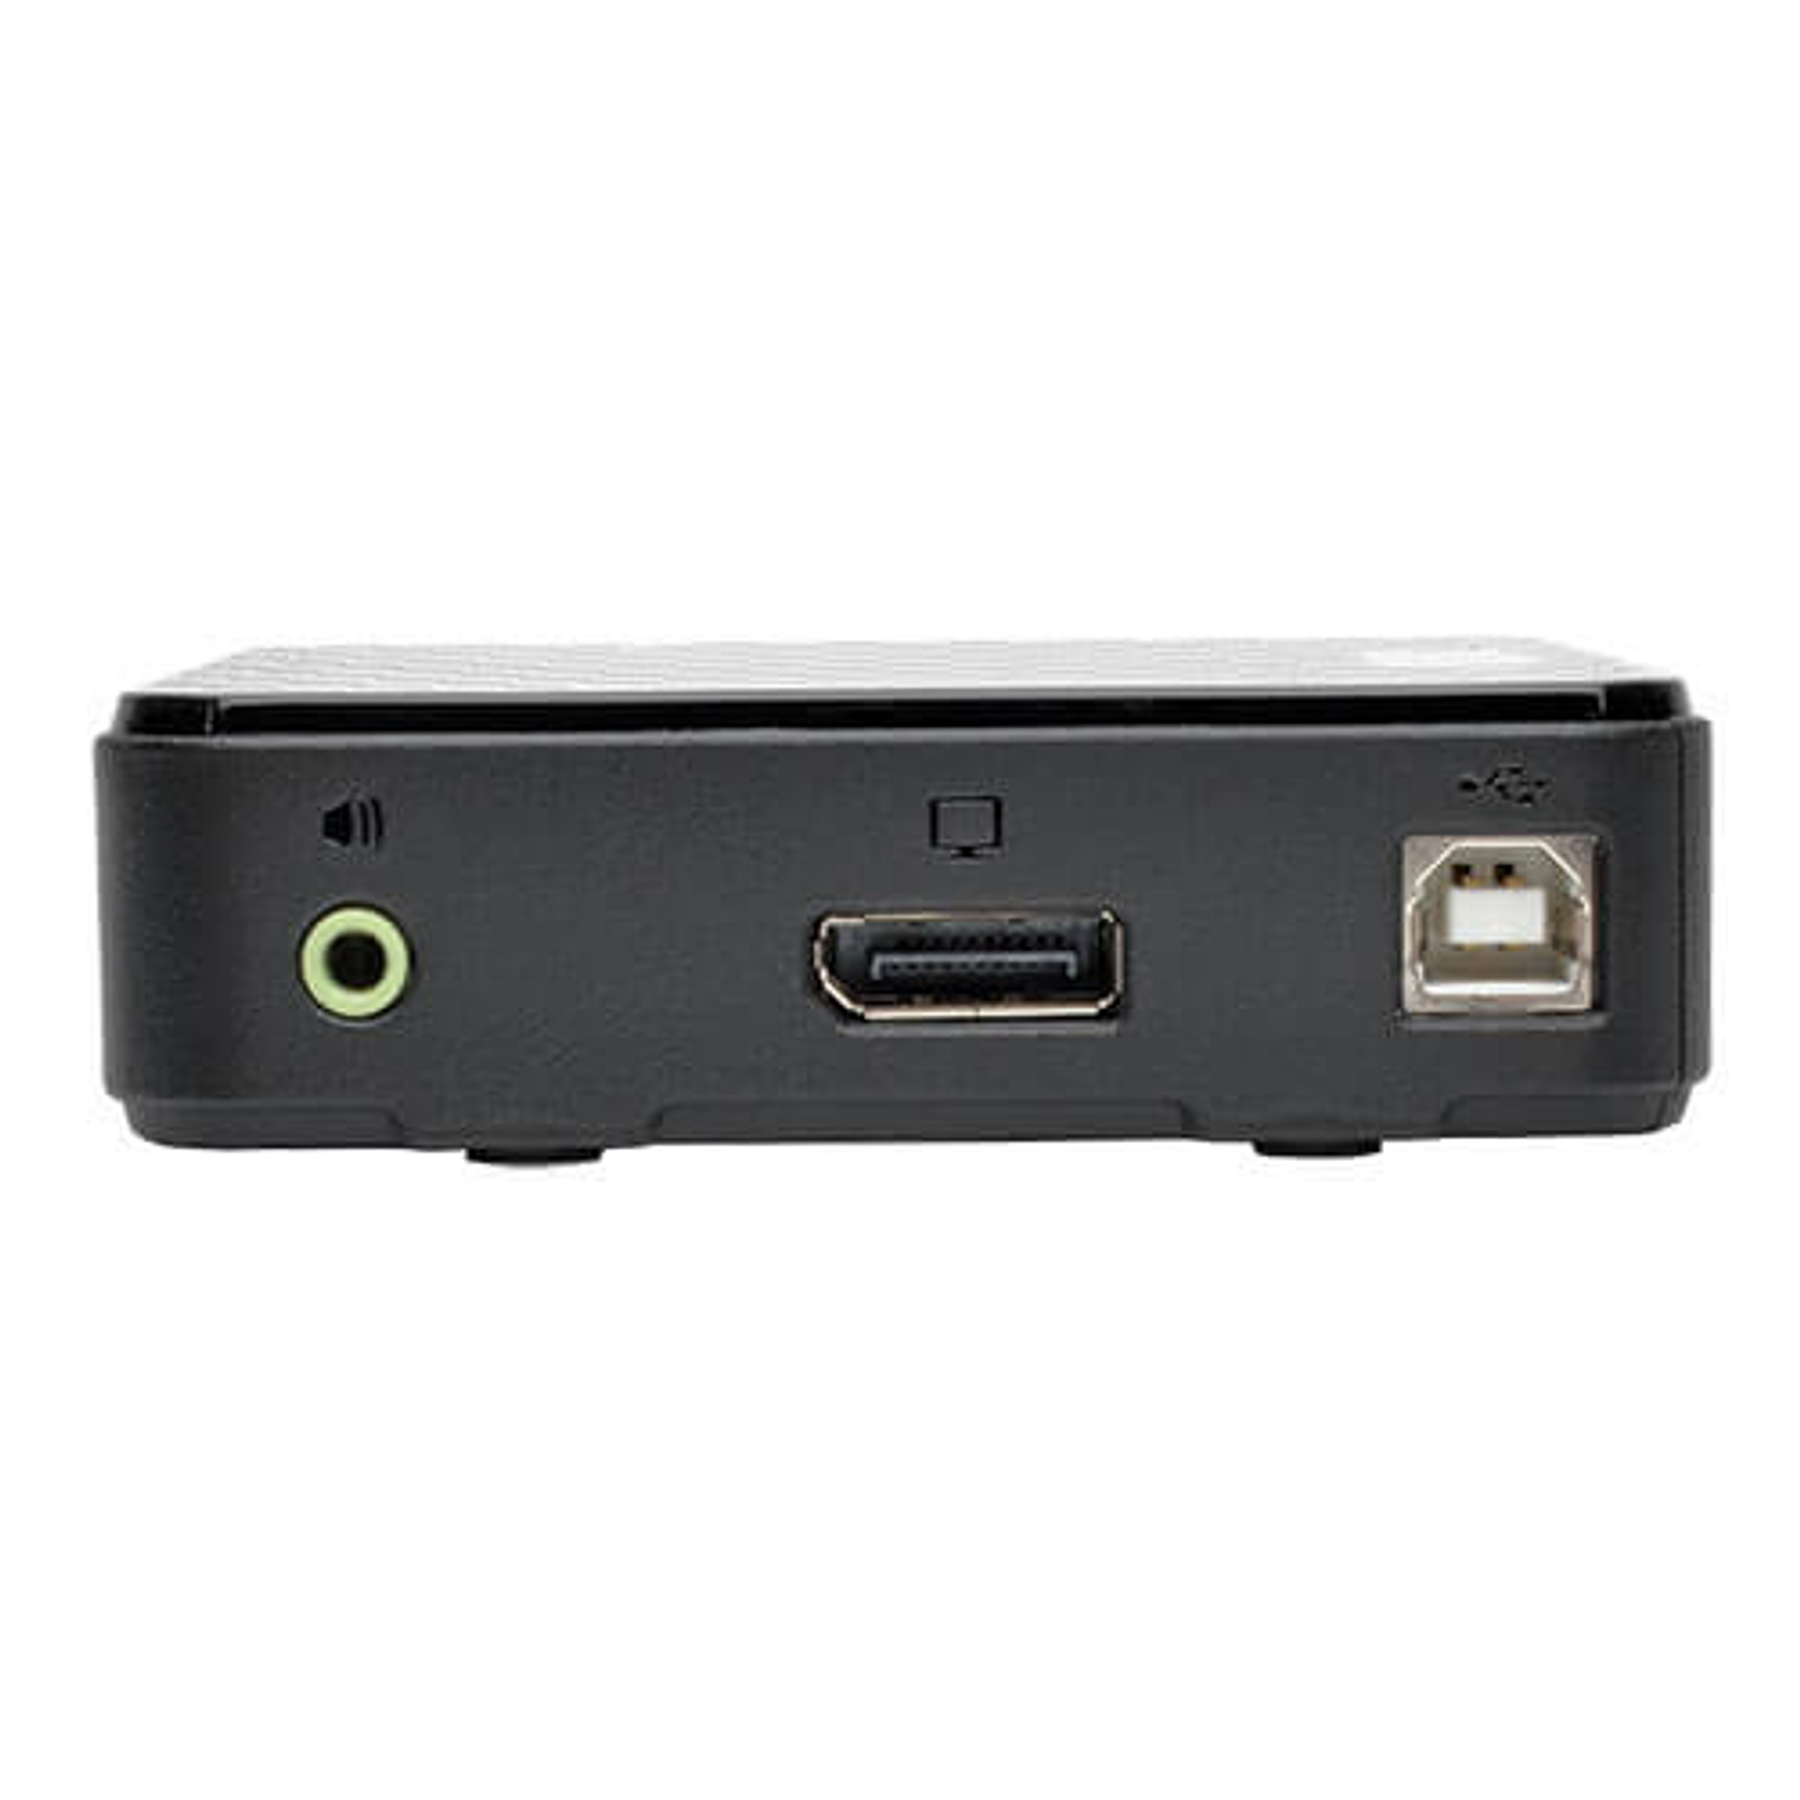 Tripp Lite KVM DisplayPort de 2 Puertos con Audio, Cables y Compartido de Periféricos USB